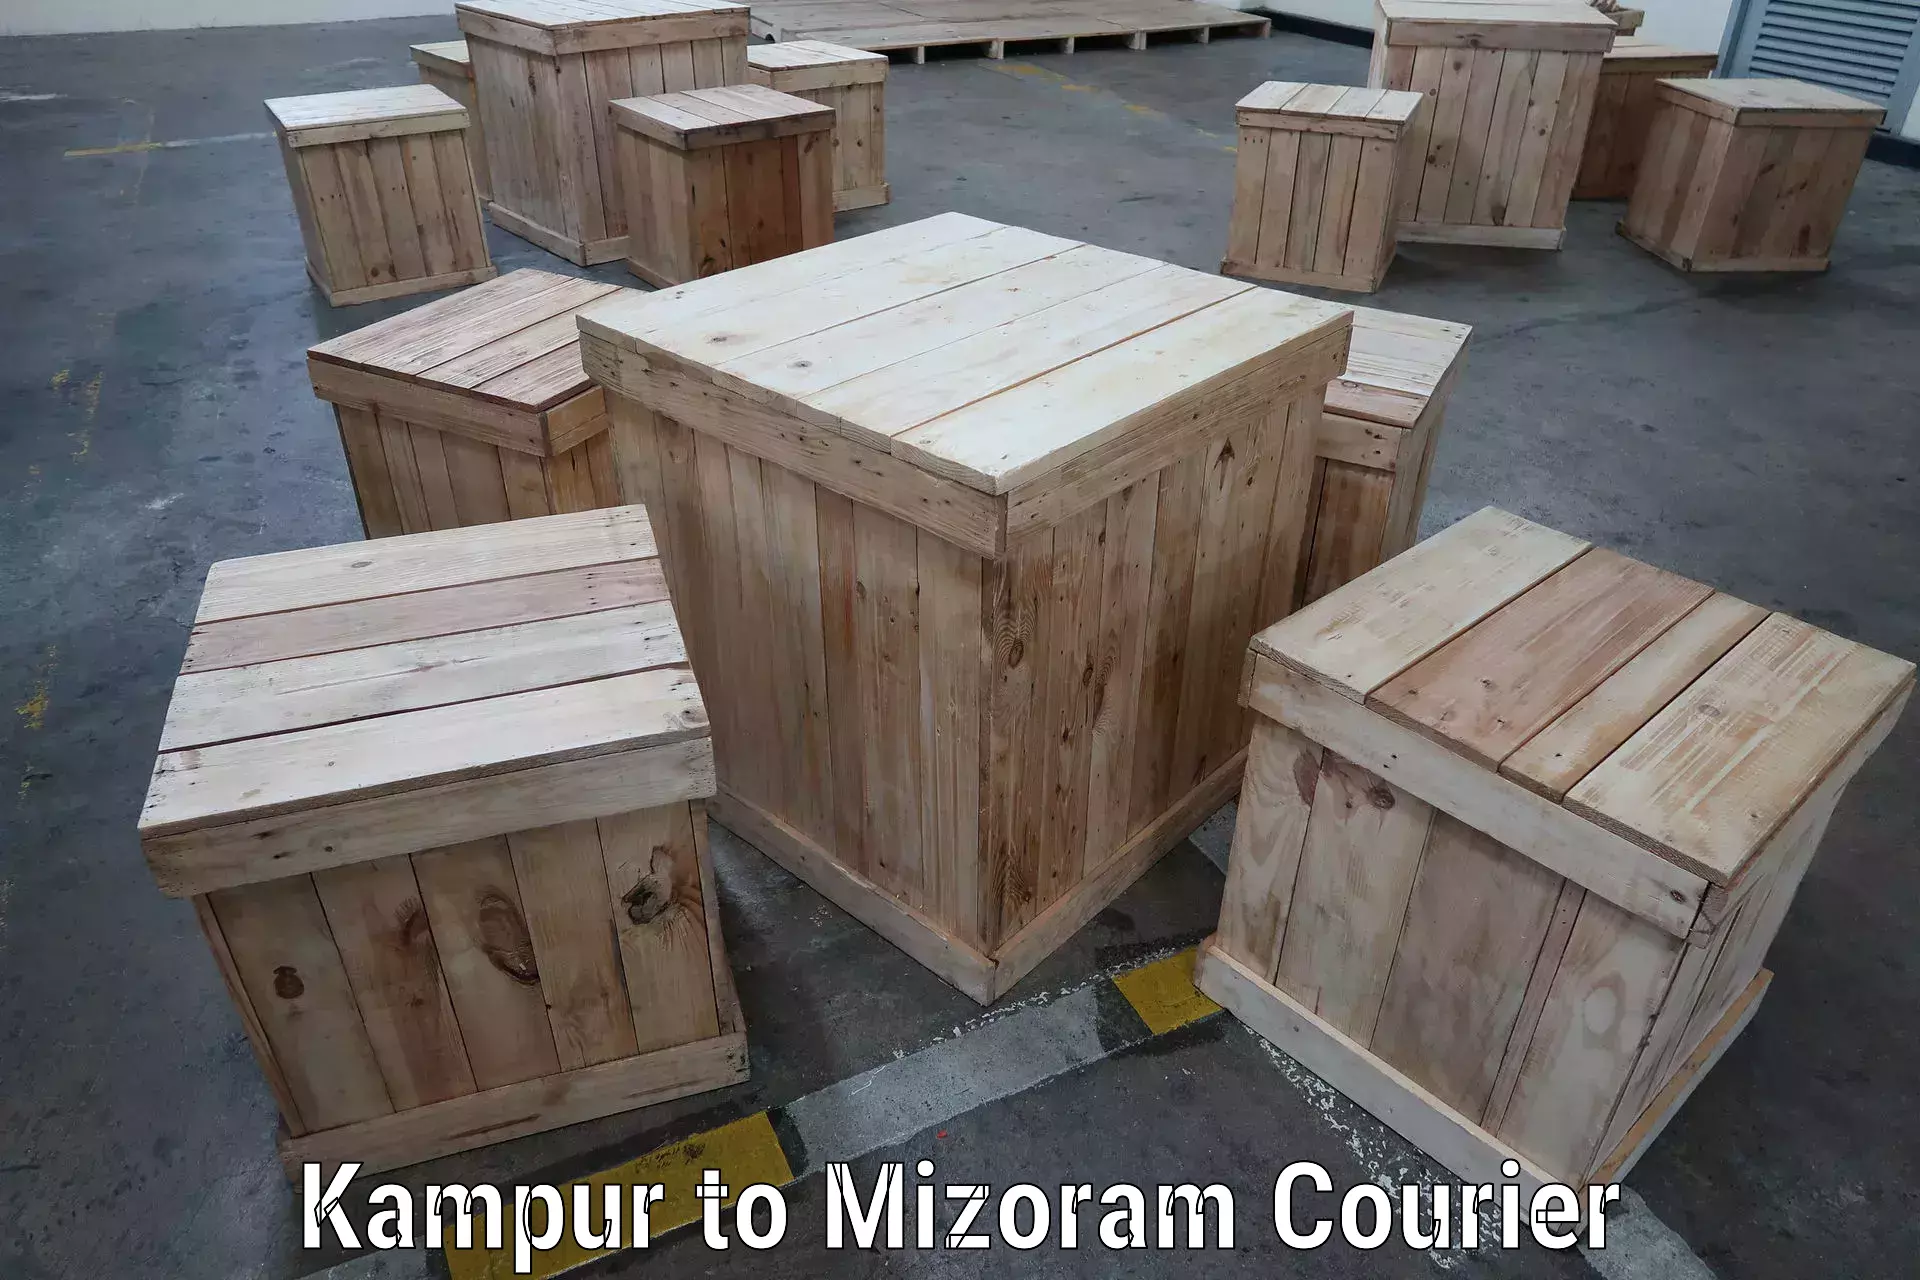 Express logistics providers Kampur to Aizawl